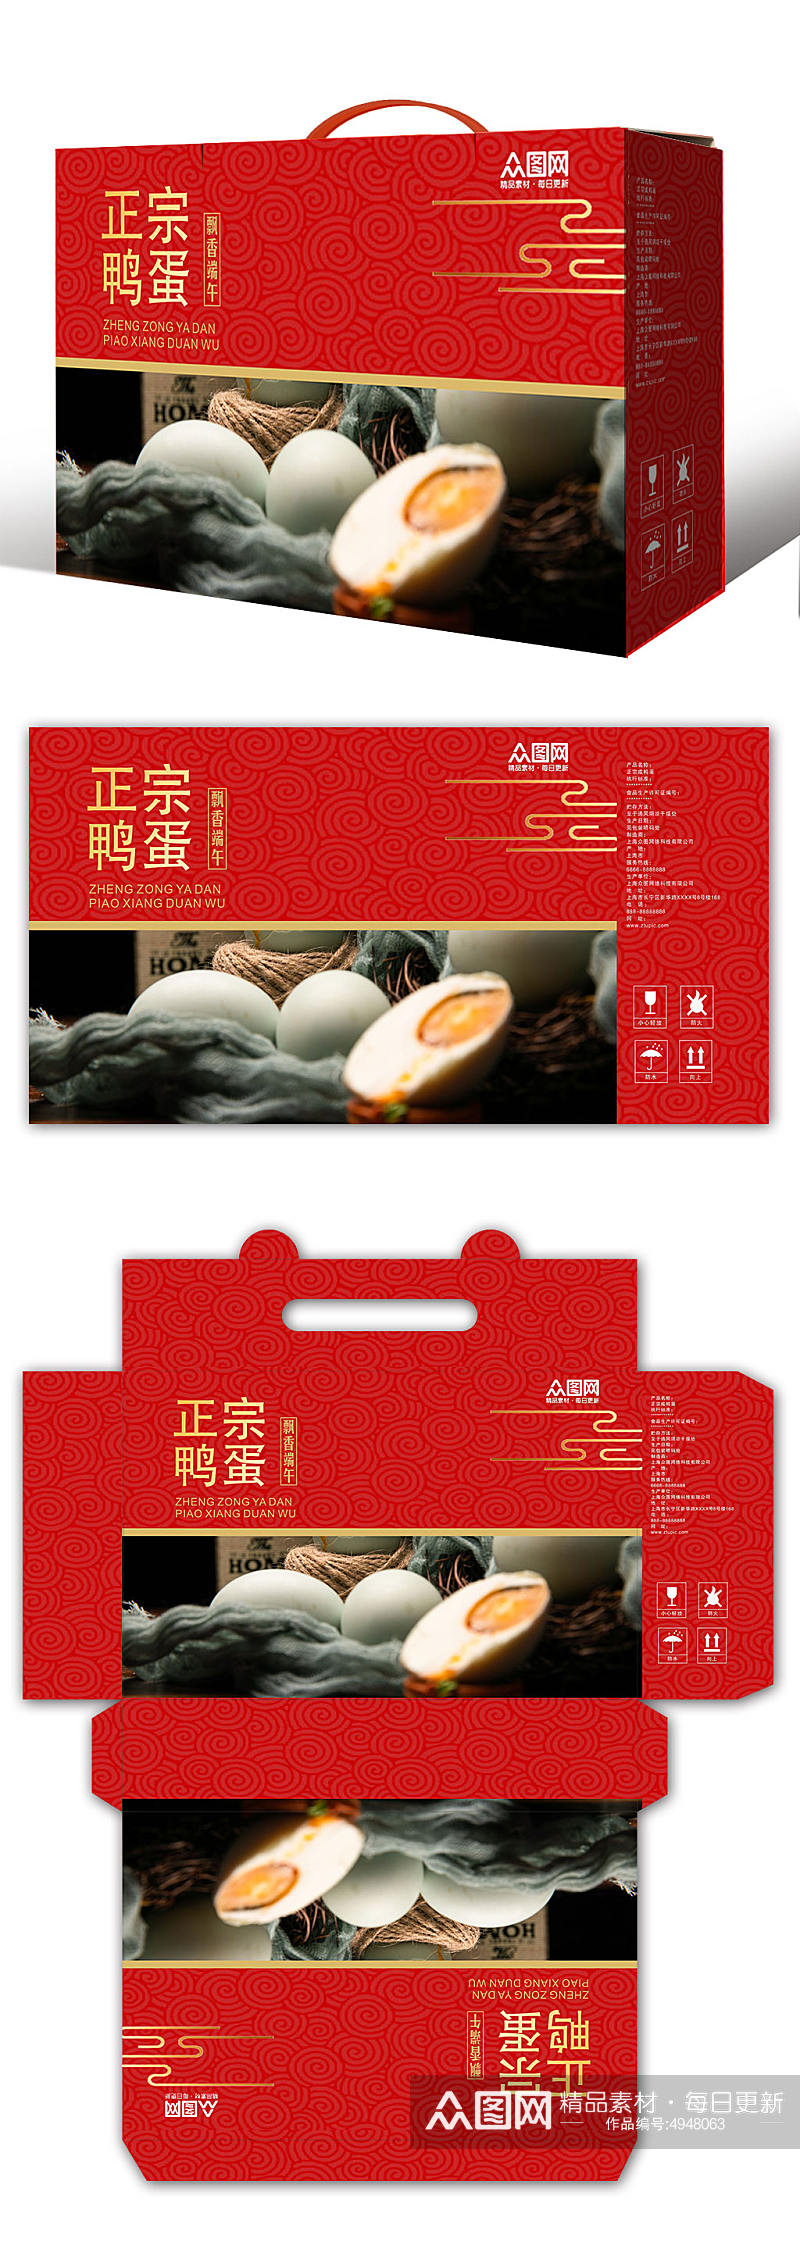 红色咸鸭蛋海鸭蛋美食包装礼盒设计素材